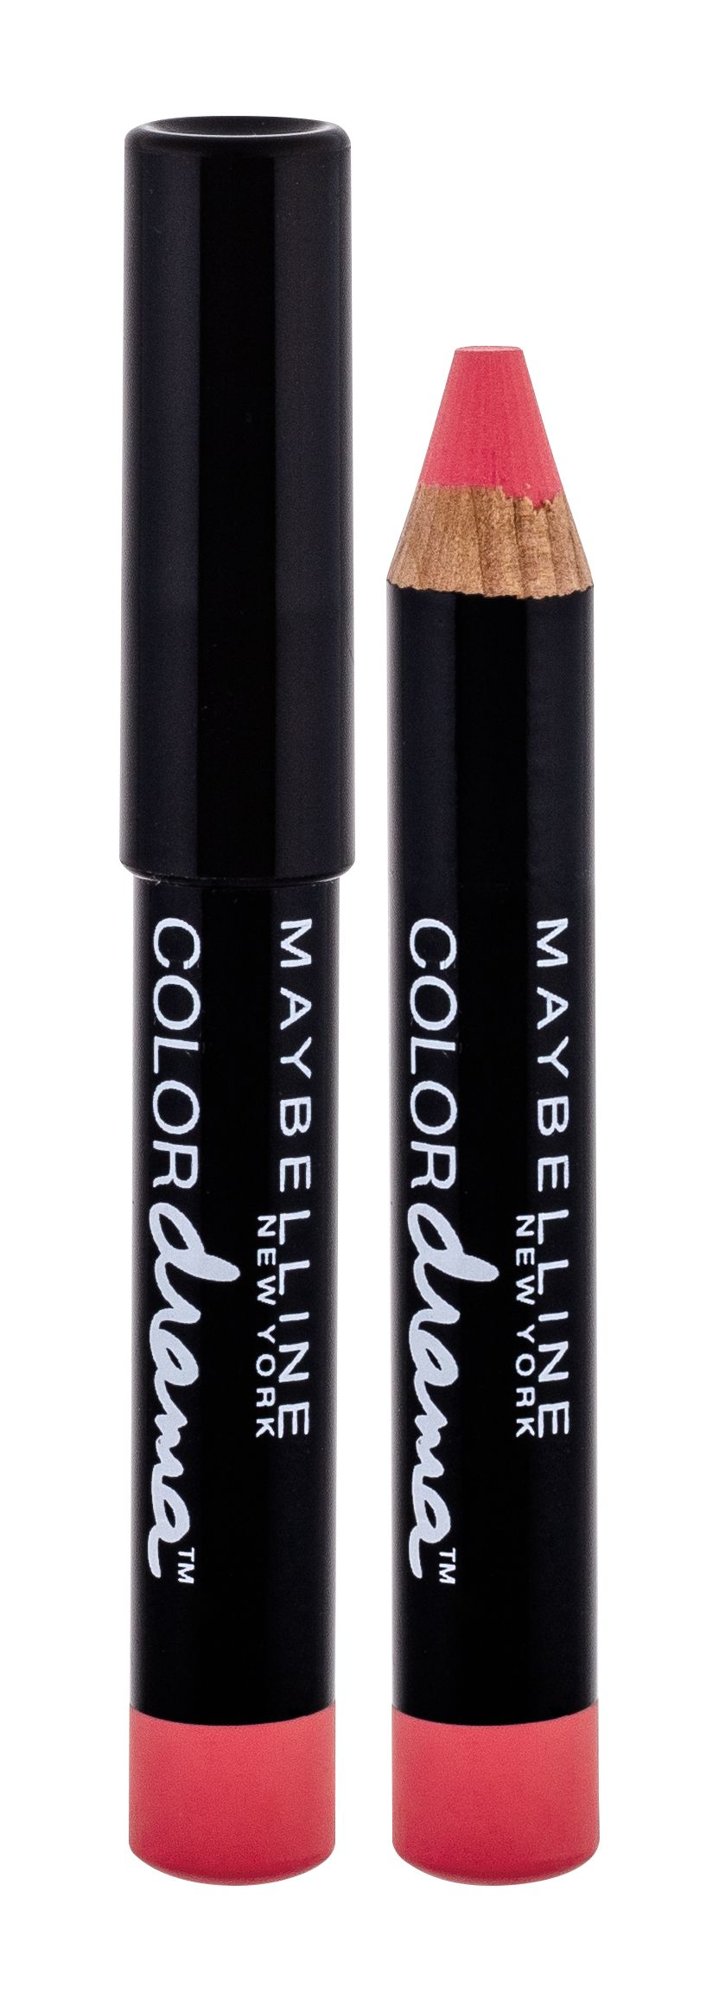 Maybelline Color Drama 2g lūpų pieštukas